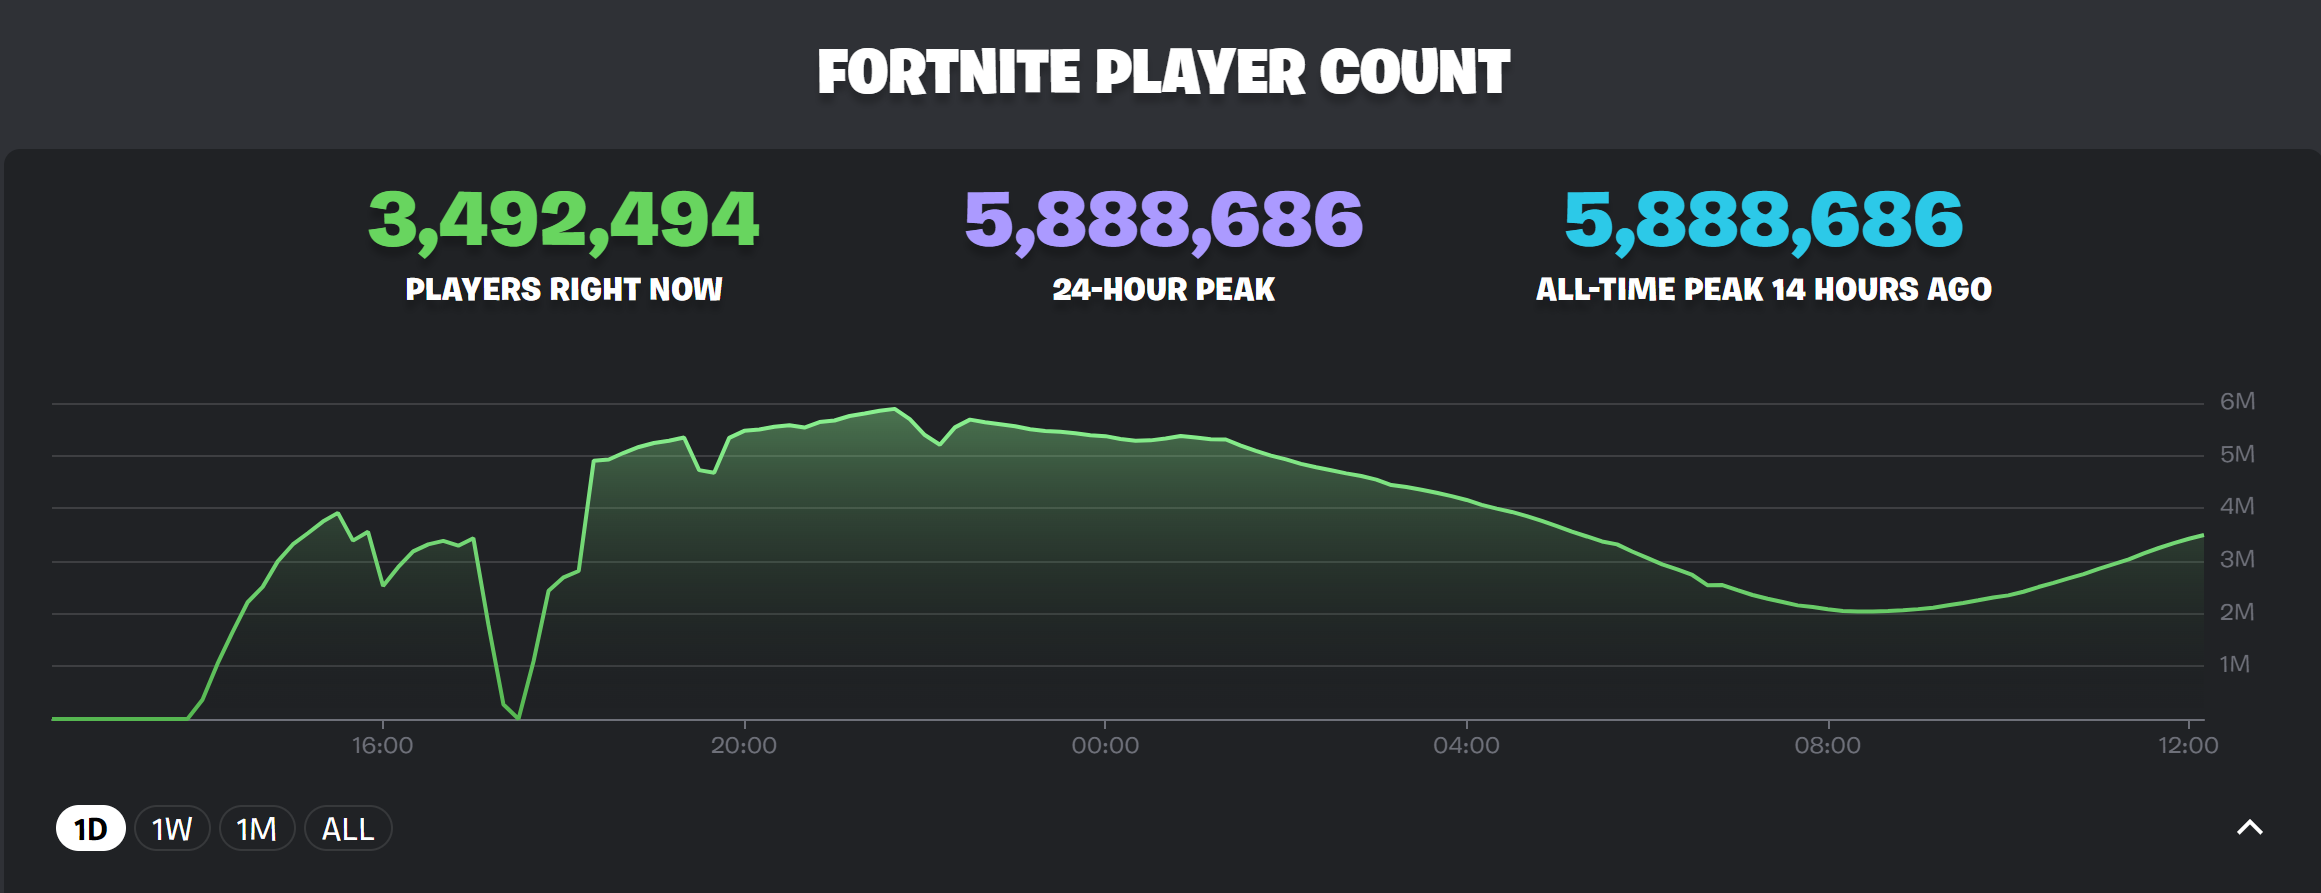 Fortnite's OG season keeps breaking player count records